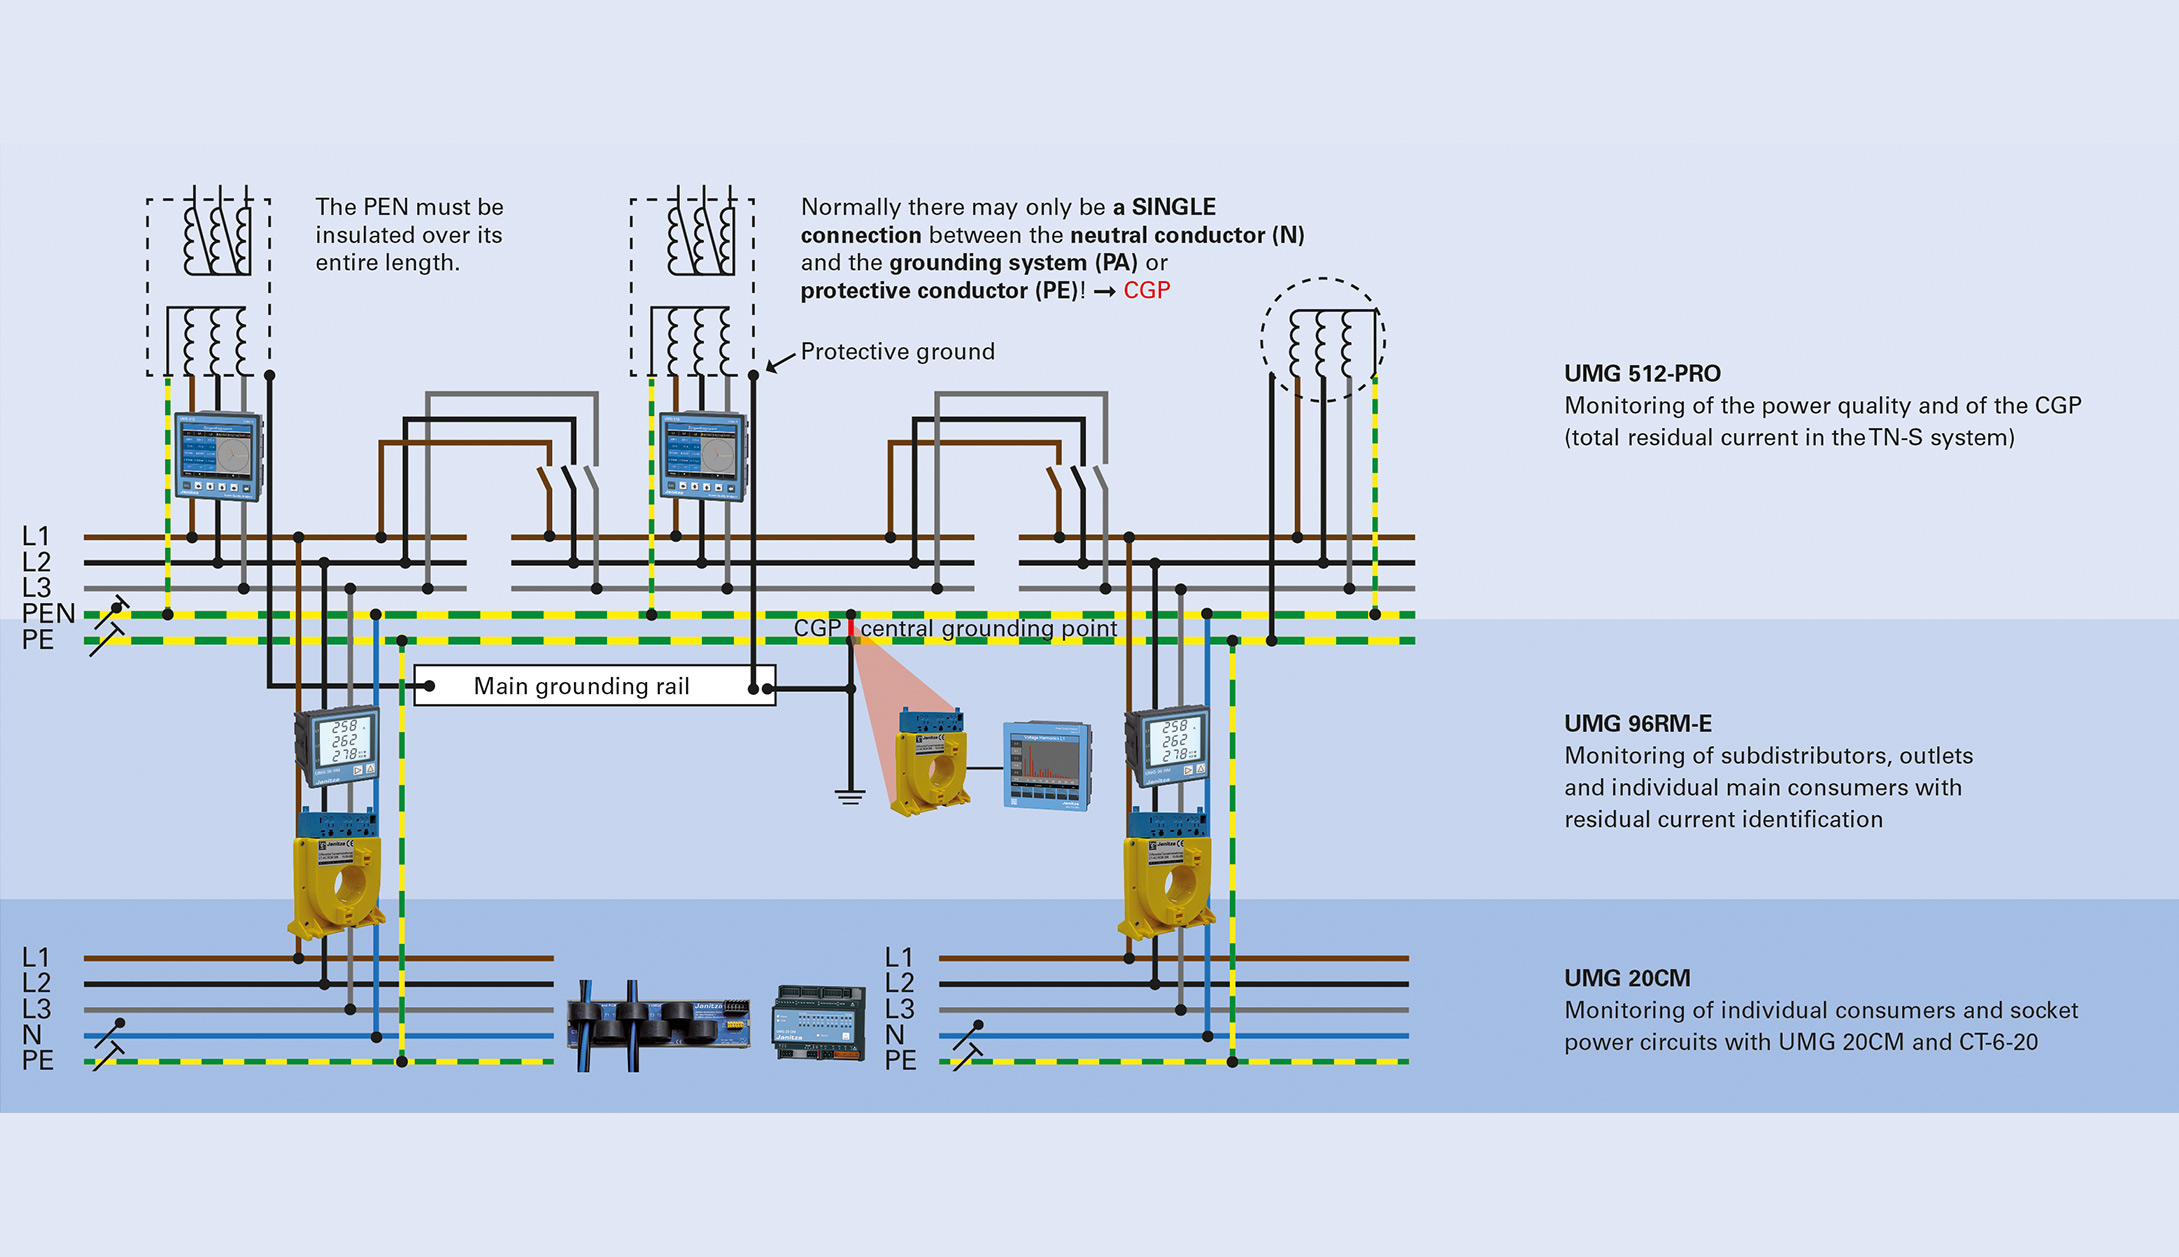 Bild 10: Eine umfassende RCM-Überwachung der Stromversorgung erfolgt auf allen Ebenen: vom ZEP und überwachungsbedürftigen Abgänge in der NSHV, Unterverteilungen, bis hin zu einzelnen kritischen Lasten.